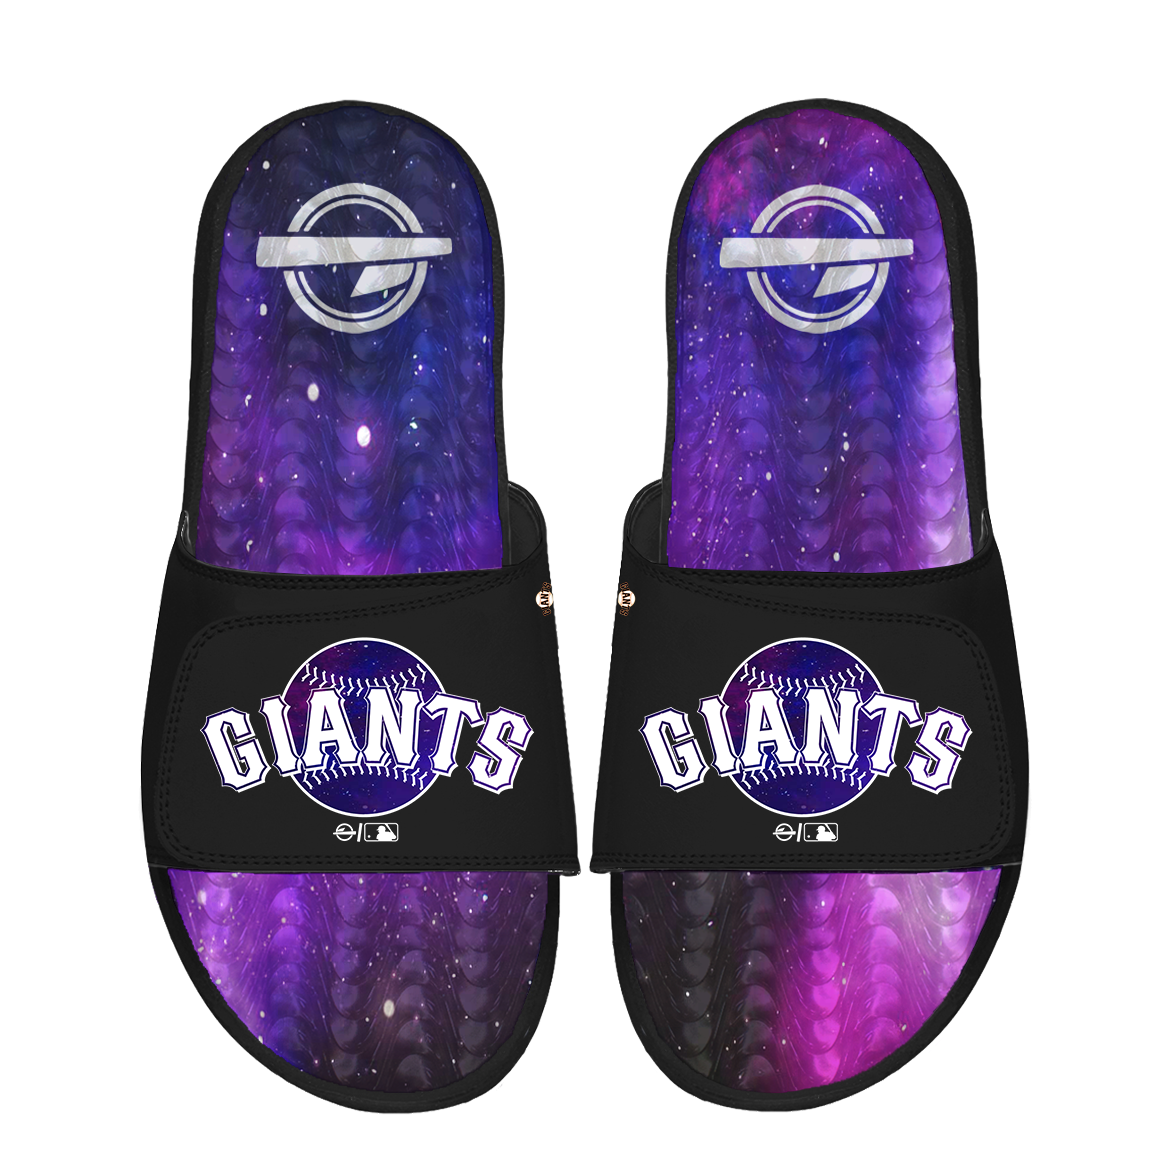 San Francisco Giants Black Galaxy Gel